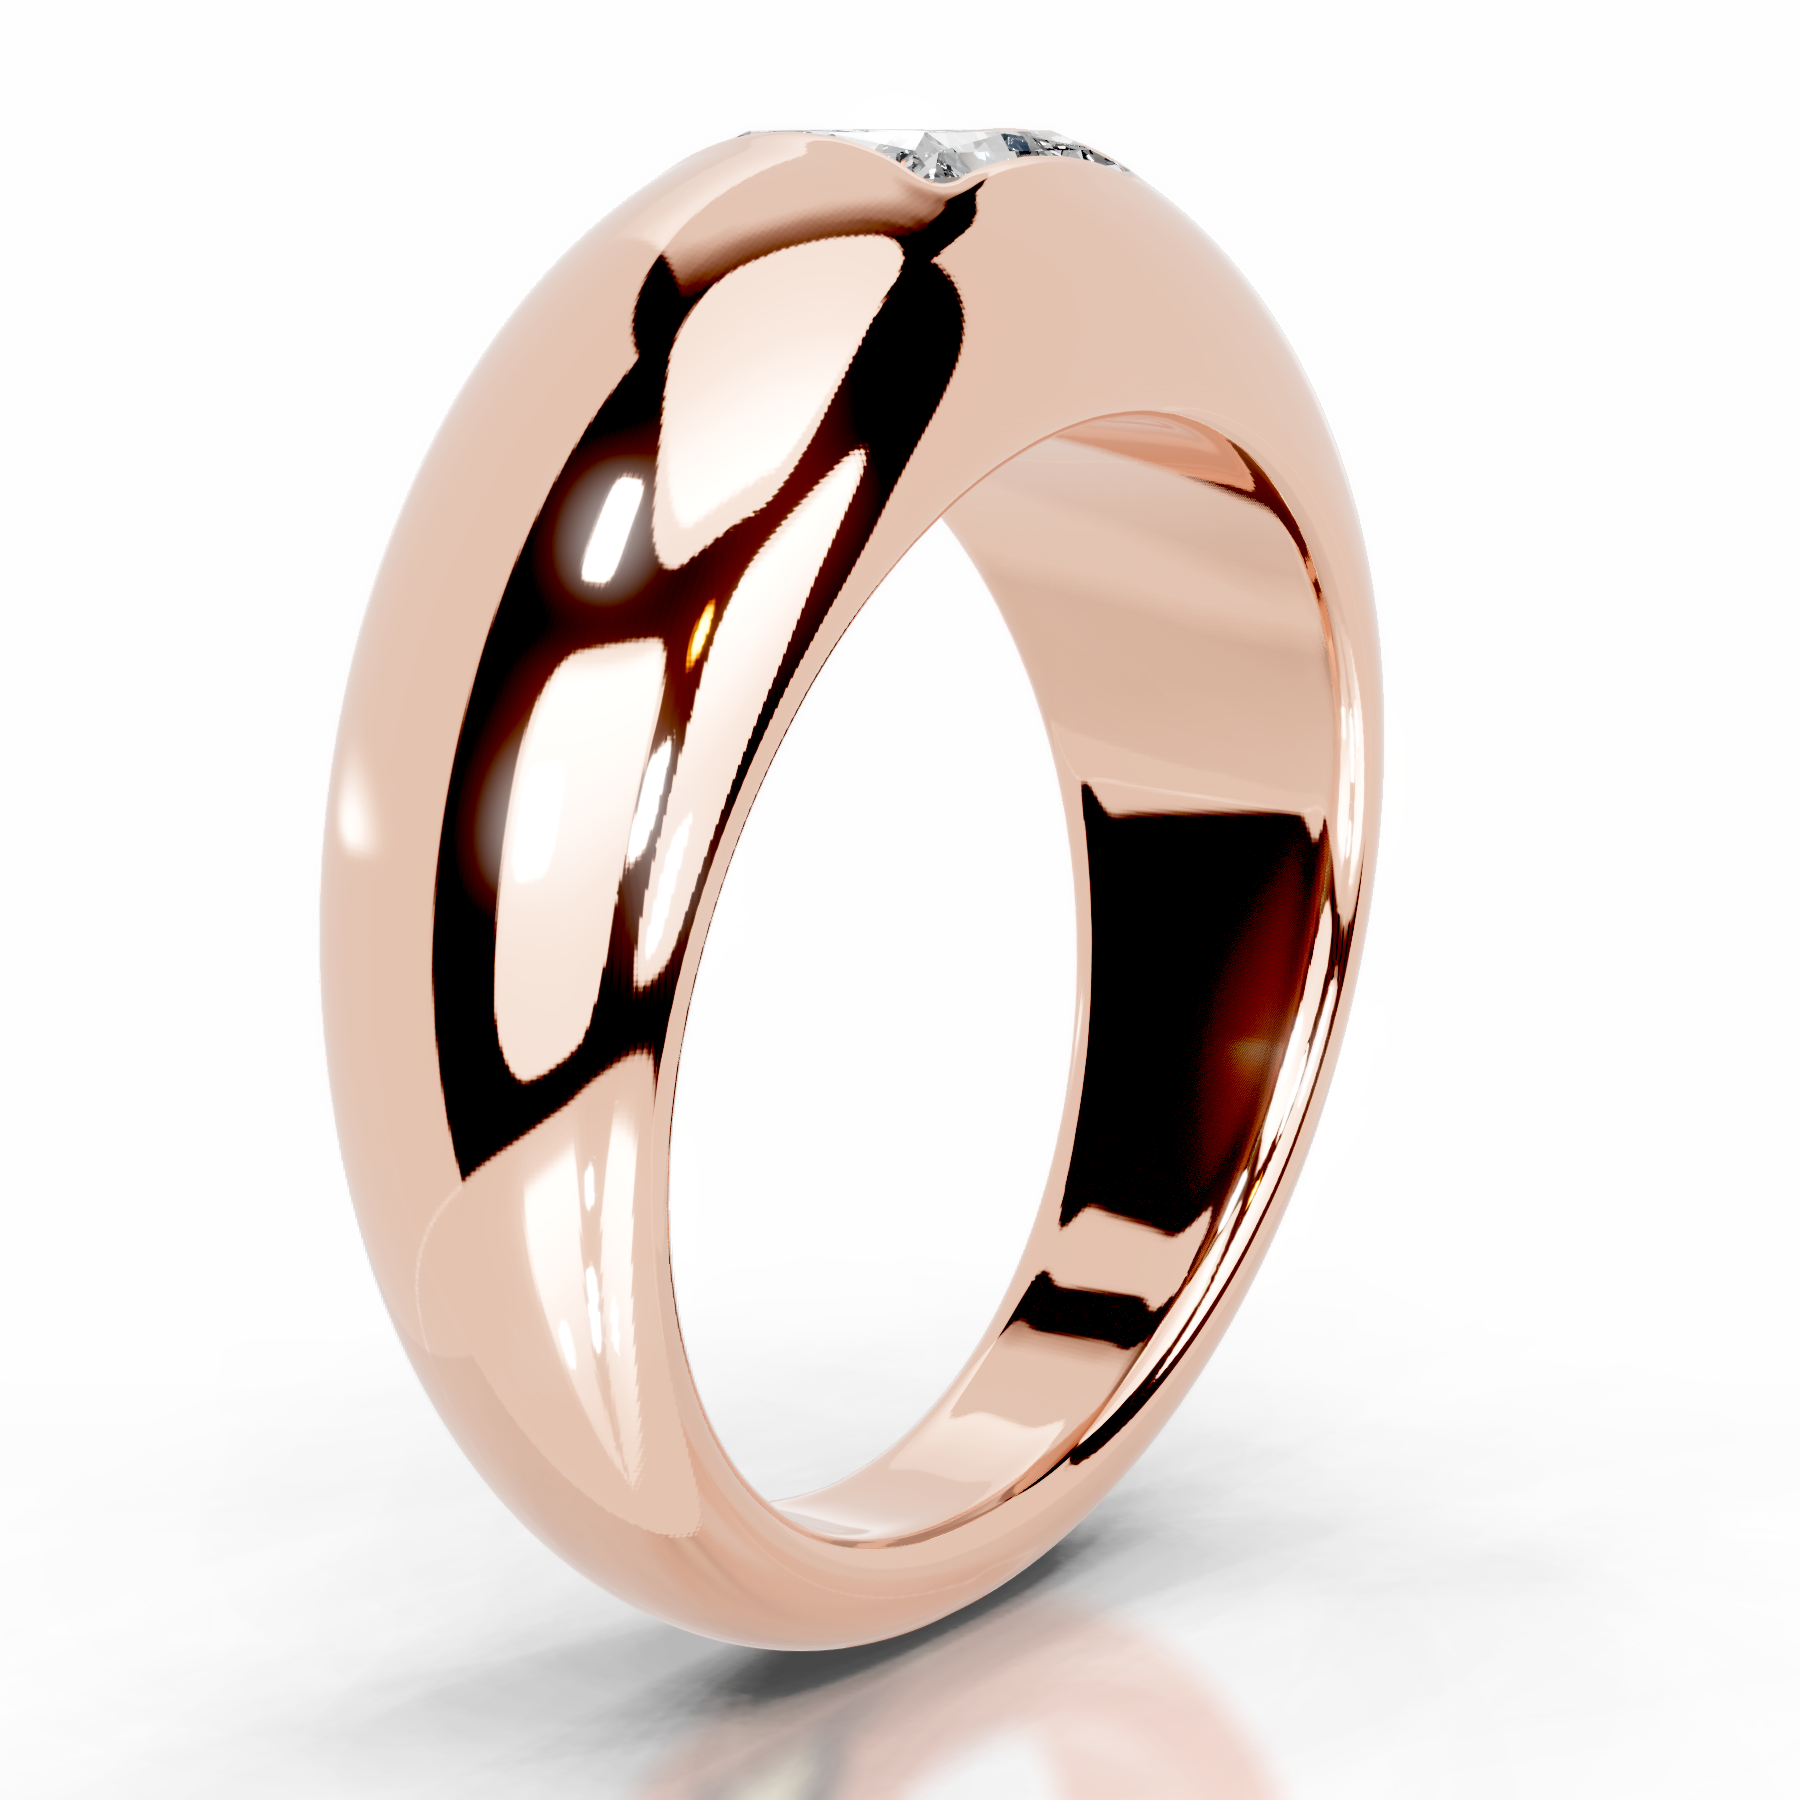 Aaliyah Diamond Engagement Ring   (1 Carat) -14K Rose Gold